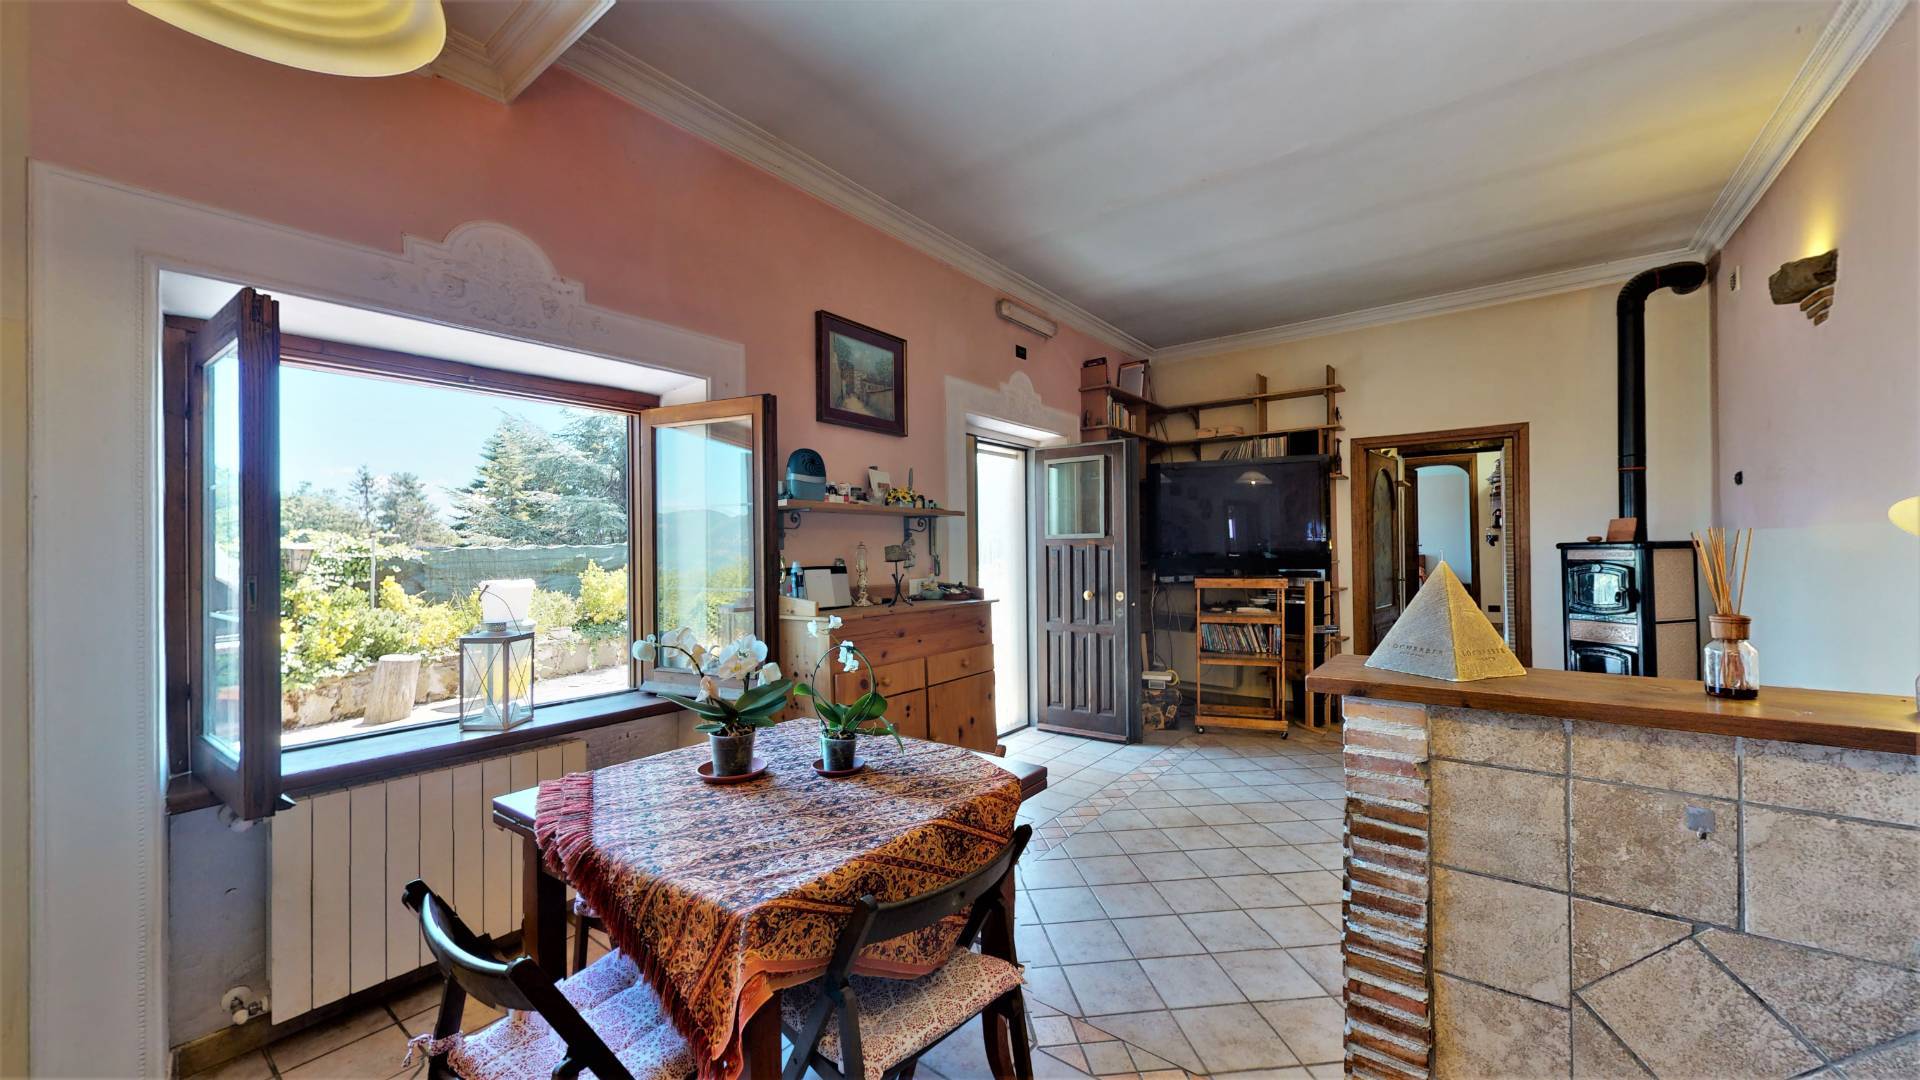 Villa a Schiera in vendita a San Vito Romano, 3 locali, prezzo € 149.000 | CambioCasa.it